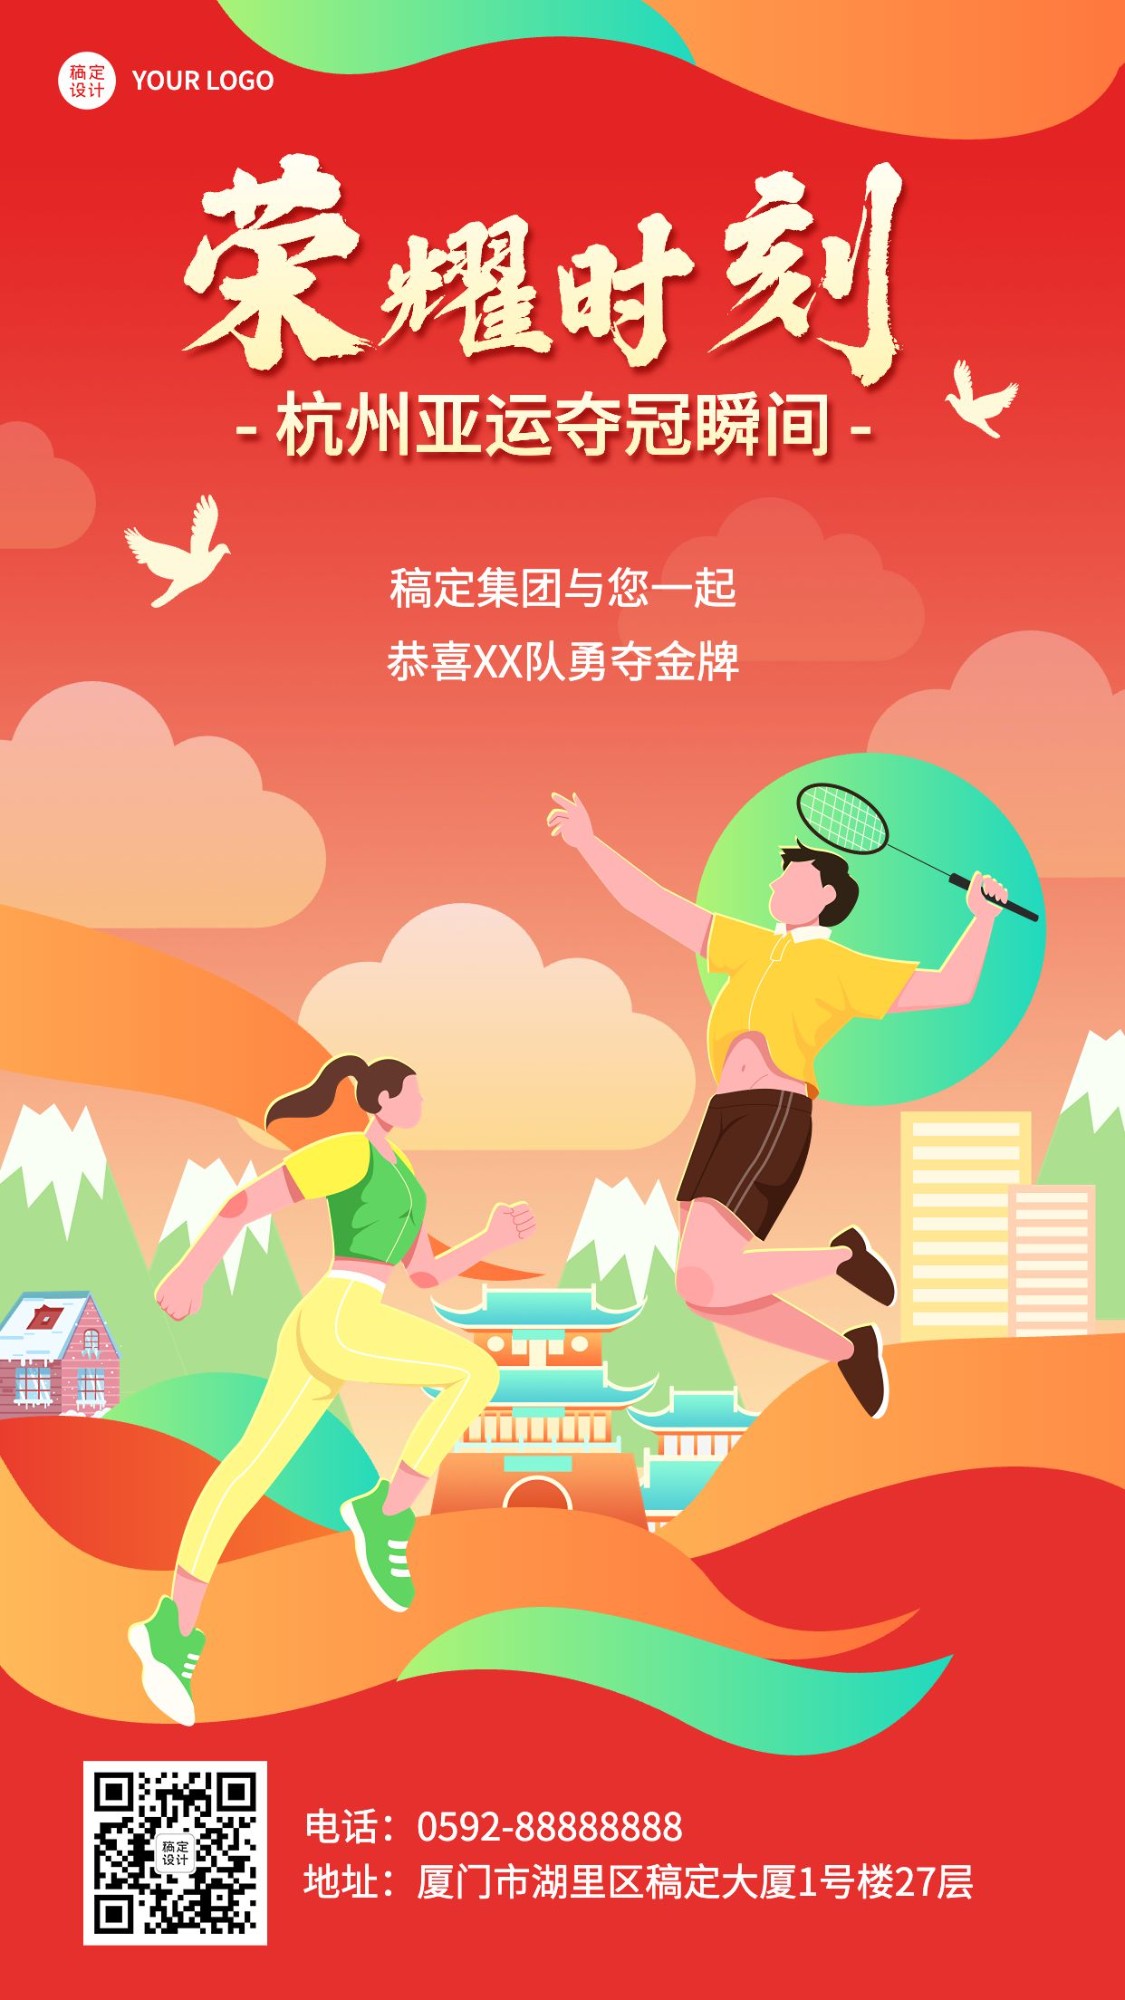 杭州亚运会夺冠荣耀时刻手绘插画海报预览效果